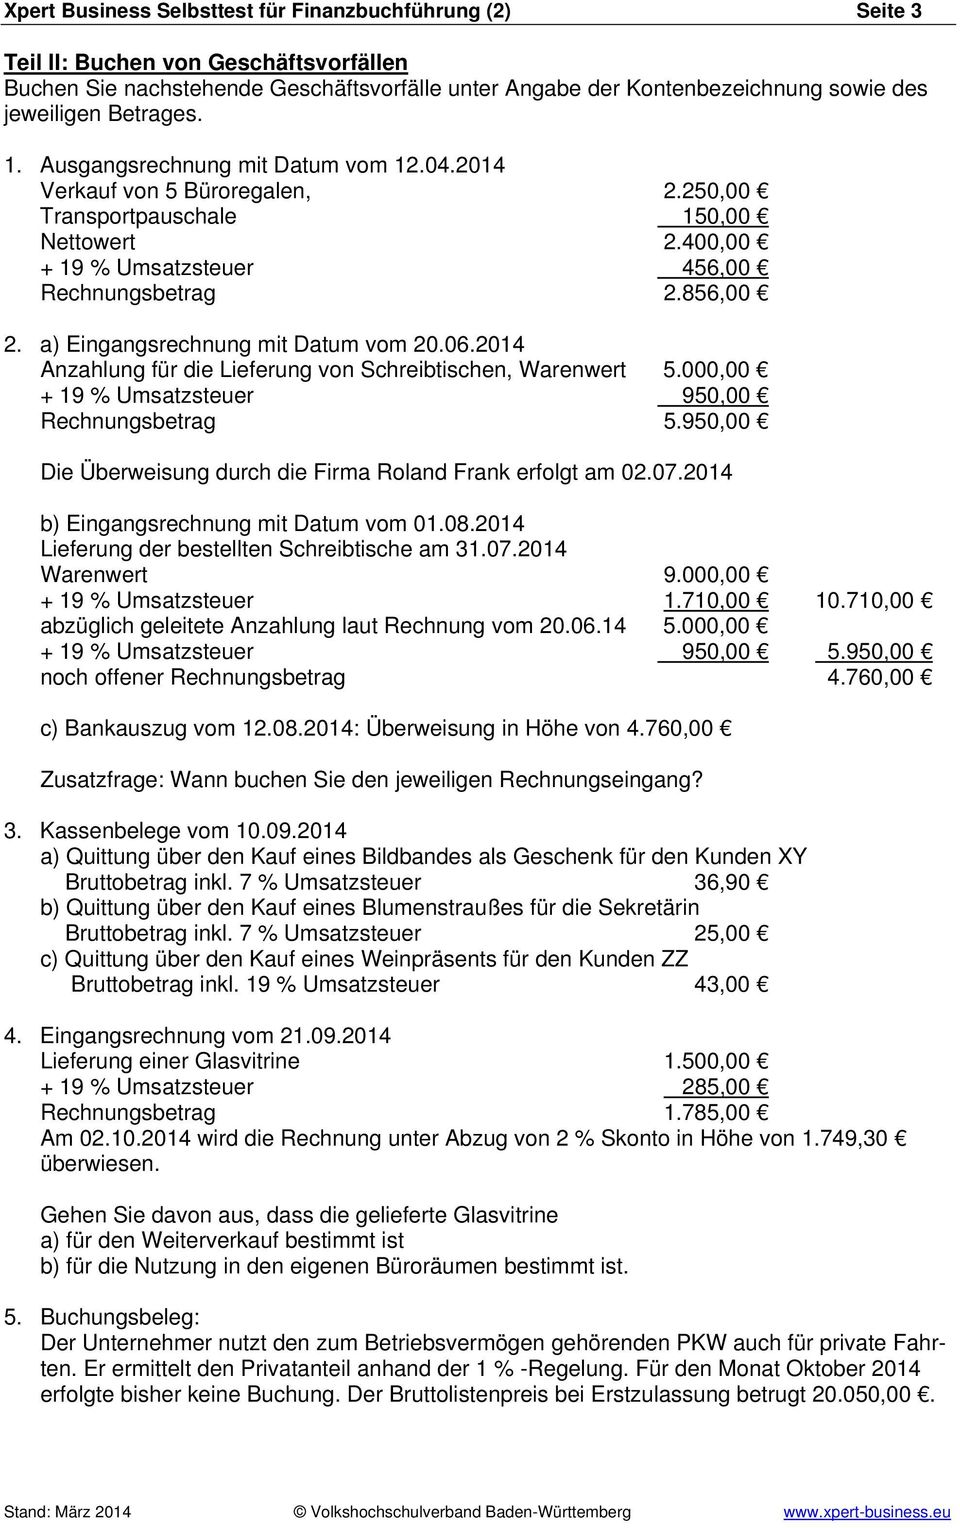 a) Eingangsrechnung mit Datum vom 20.06.2014 Anzahlung für die Lieferung von Schreibtischen, Warenwert 5.000,00 + 19 % Umsatzsteuer 950,00 Rechnungsbetrag 5.